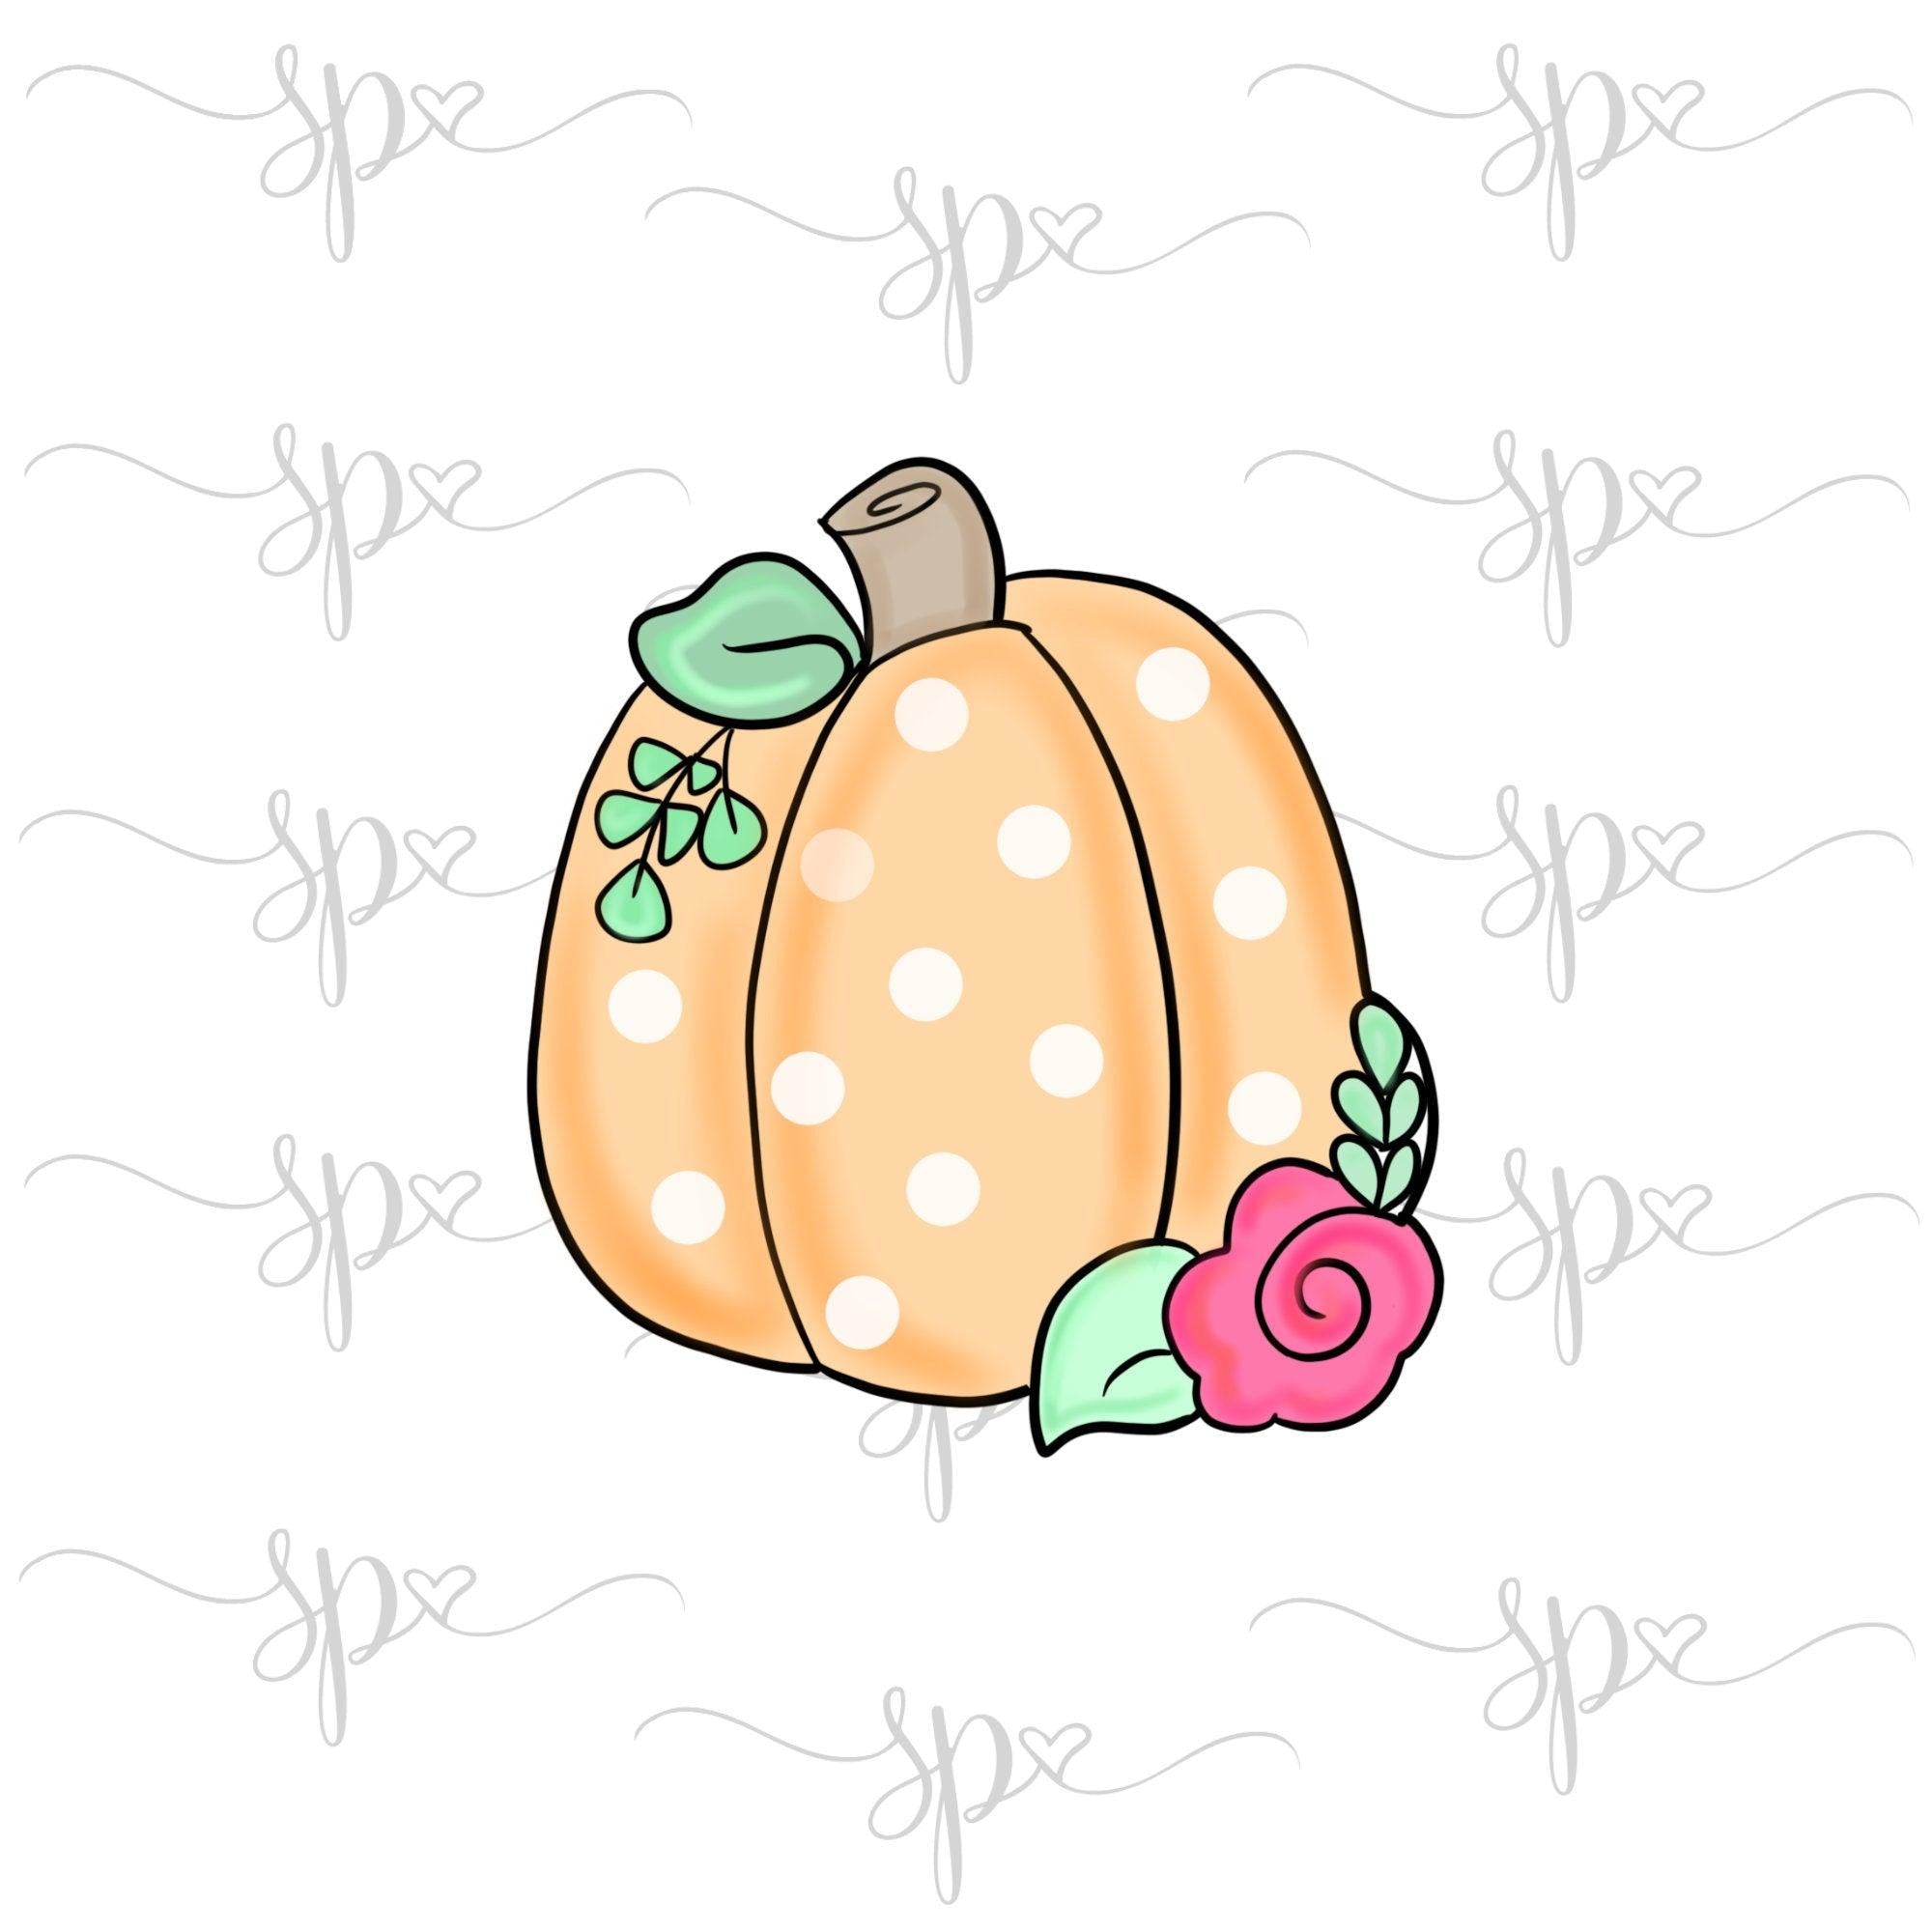 Floral Pumpkin Cookie Cutter - Sweetleigh 